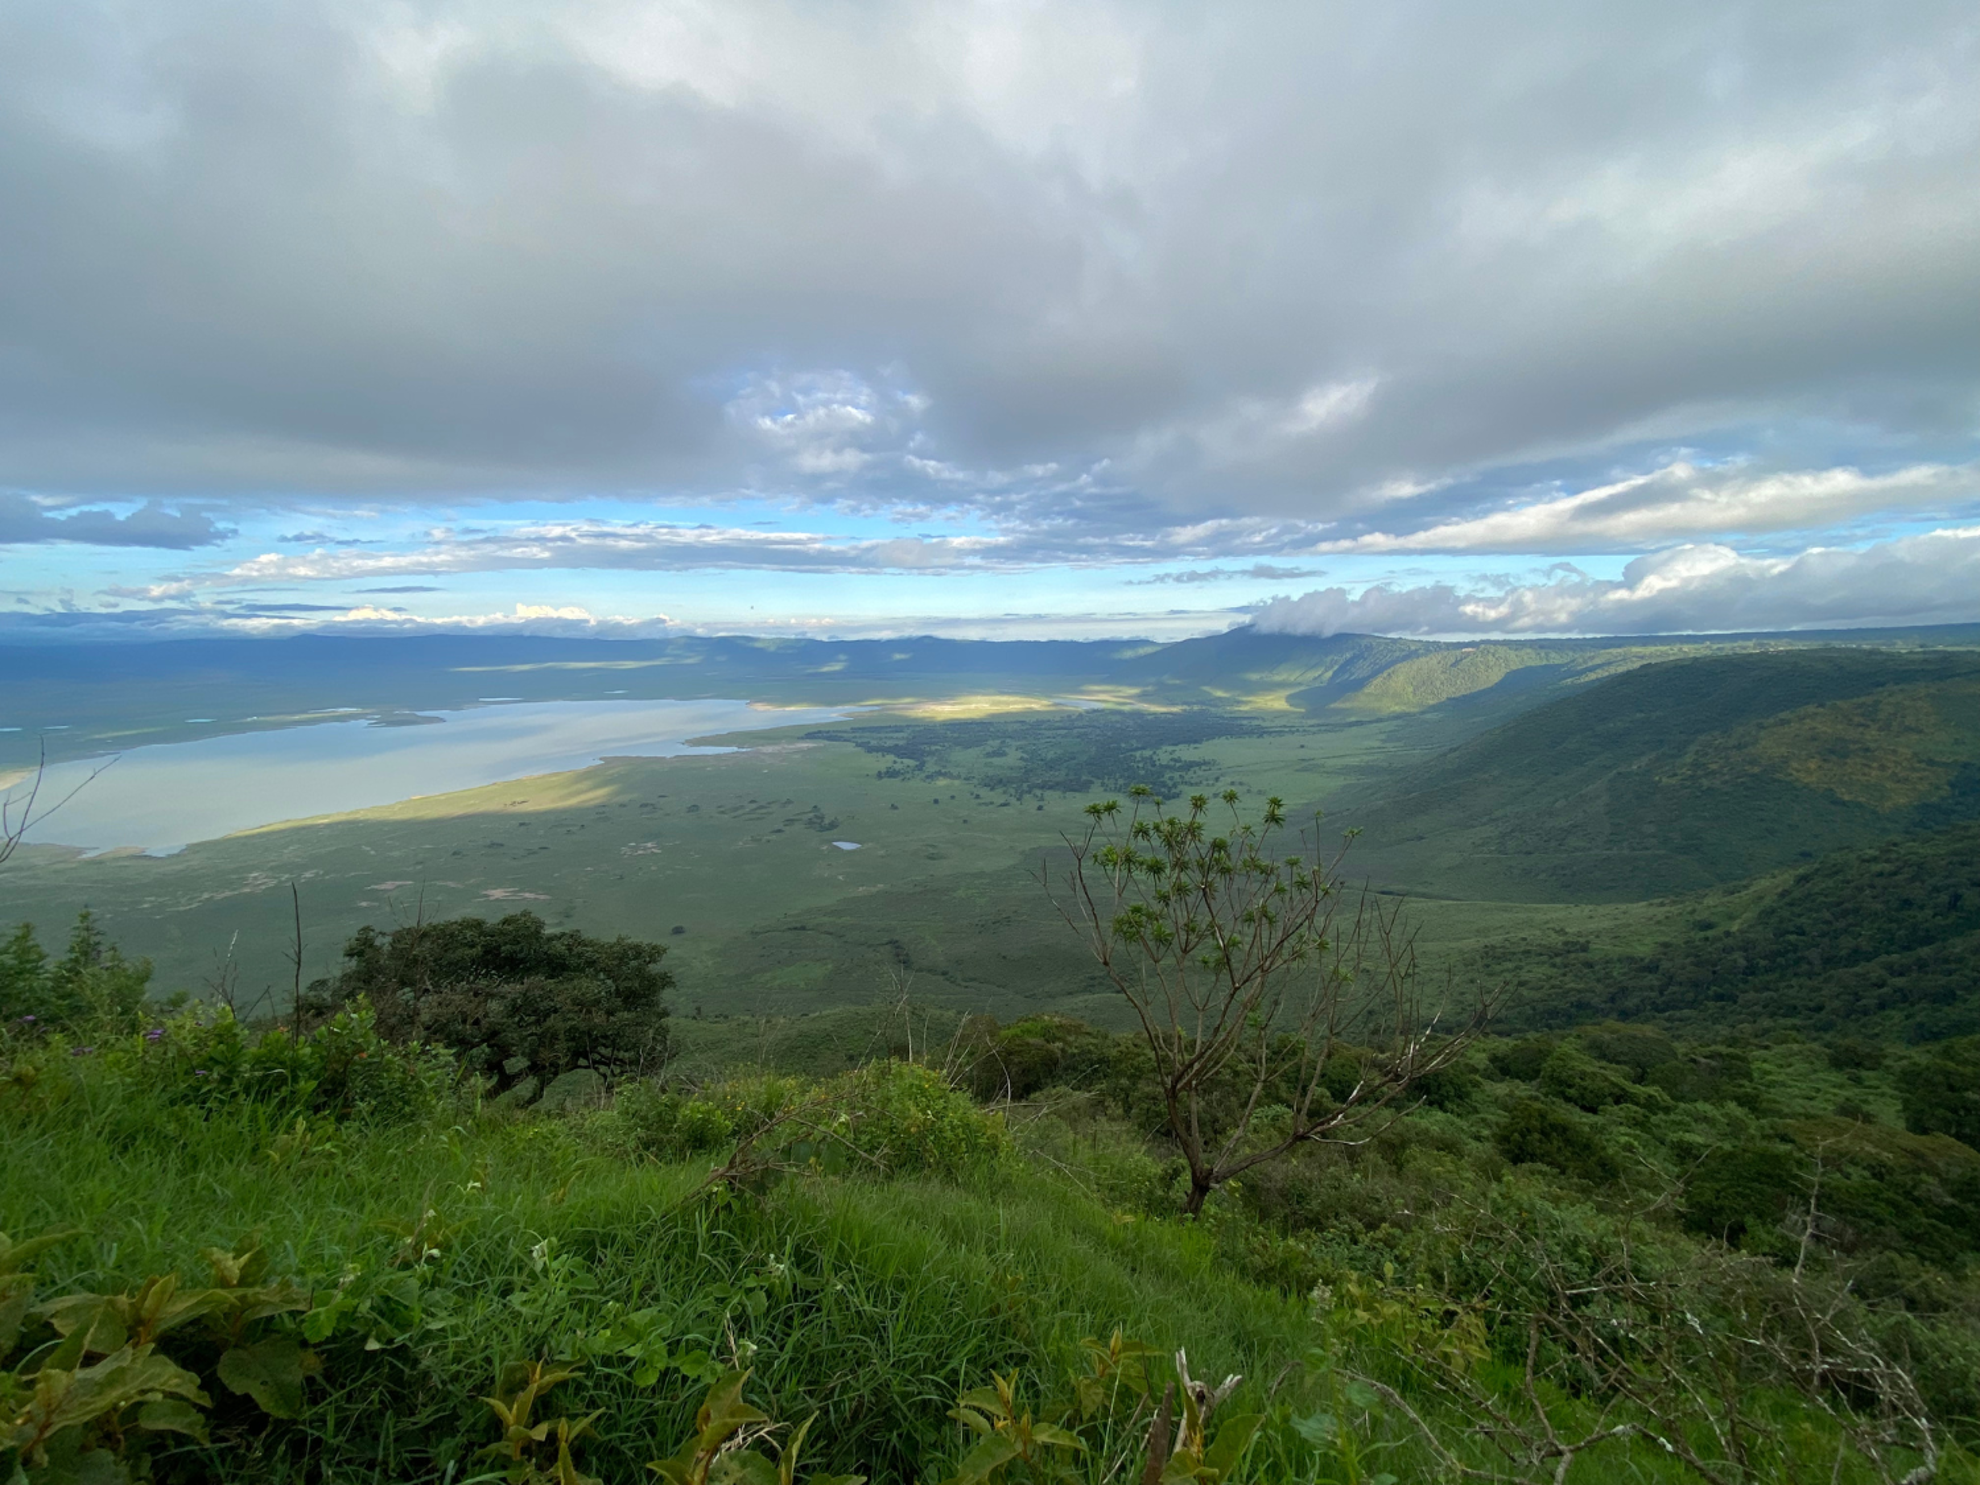 Picture of Tanzania Journey: Ngorongoro Highlands Trek and Wildlife Safari